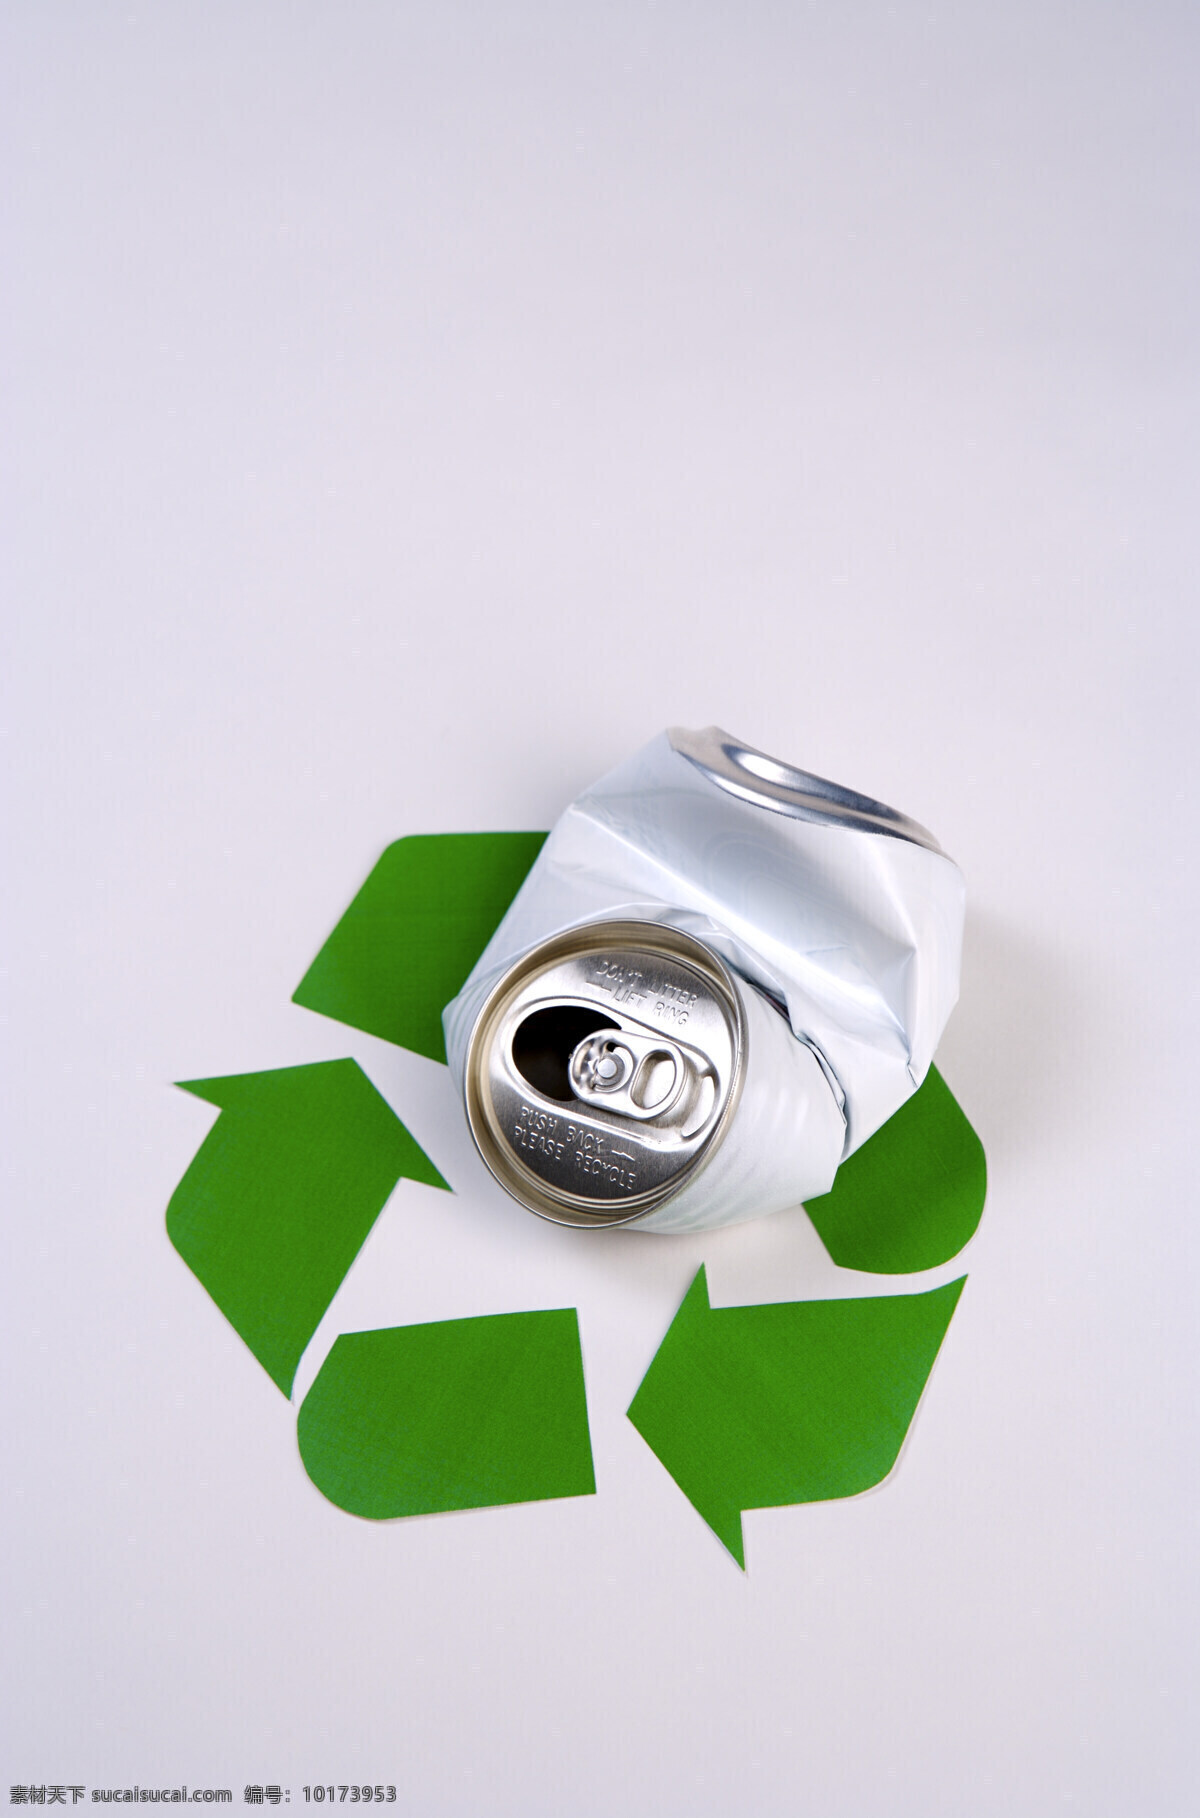 易拉罐 回收 利用 标志 垃圾 环保 公益广告 回收利用 可利用资源 高清图片 其他类别 生活百科